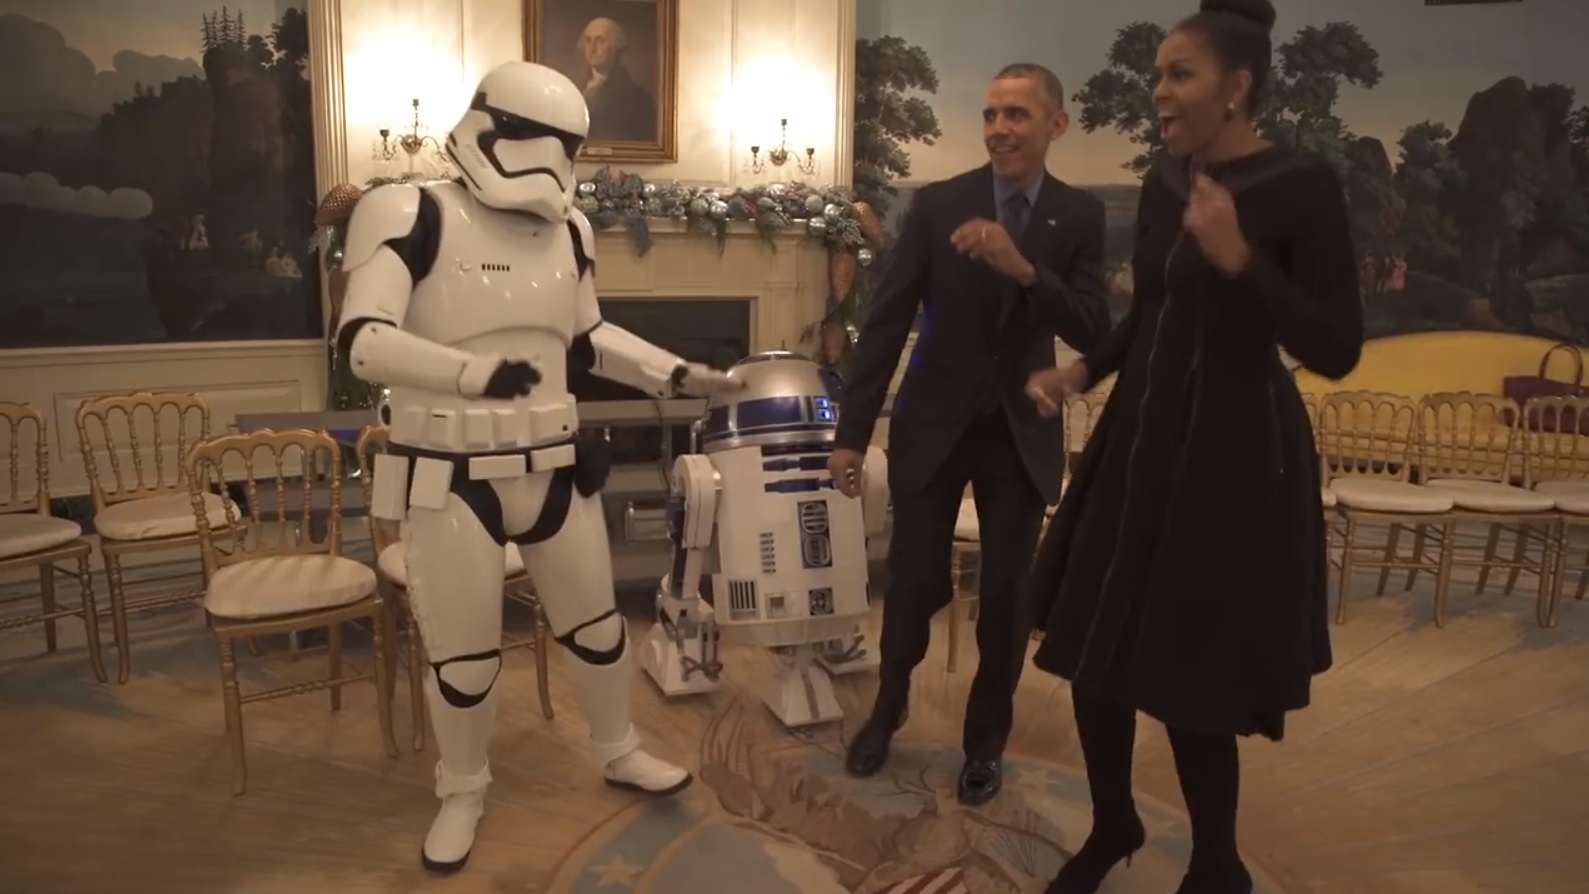 Os Obama a dançar com R2-D2 e Stormtroopers? Sim, é mesmo verdade [vídeo]